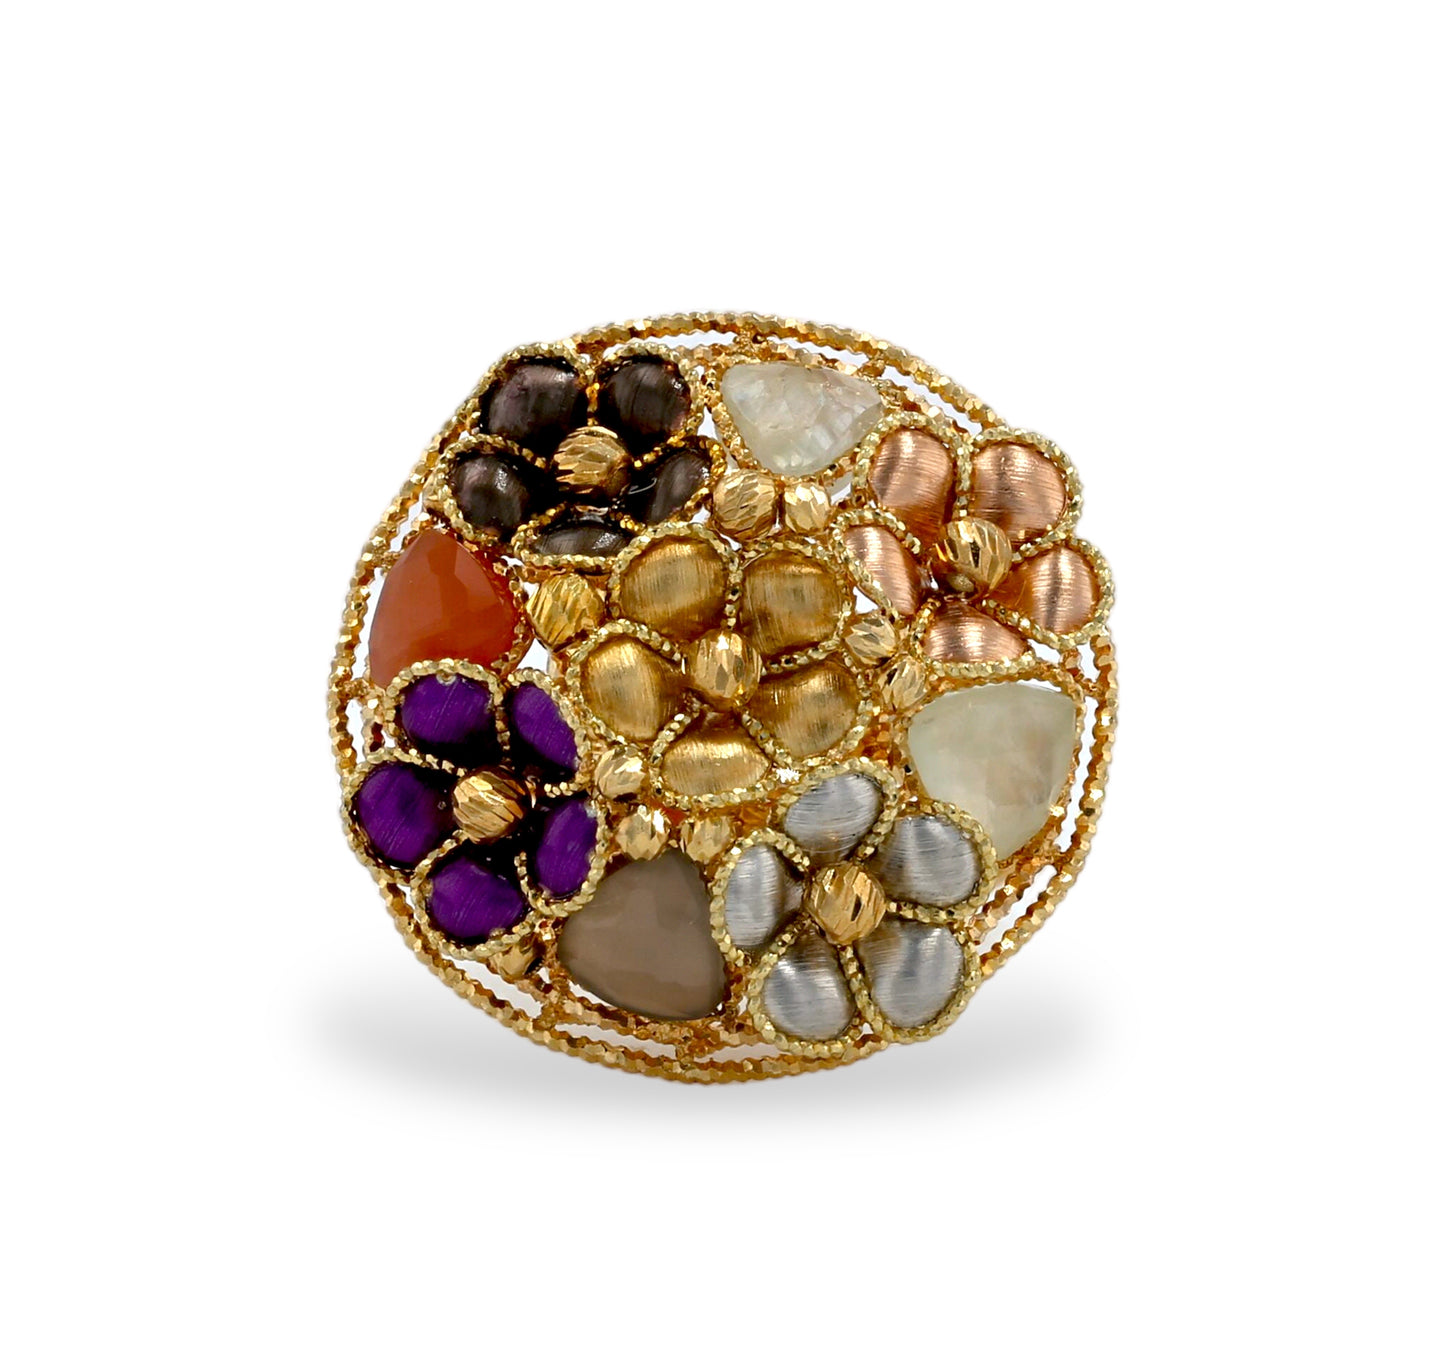 Gold 14k designer cup flower ring